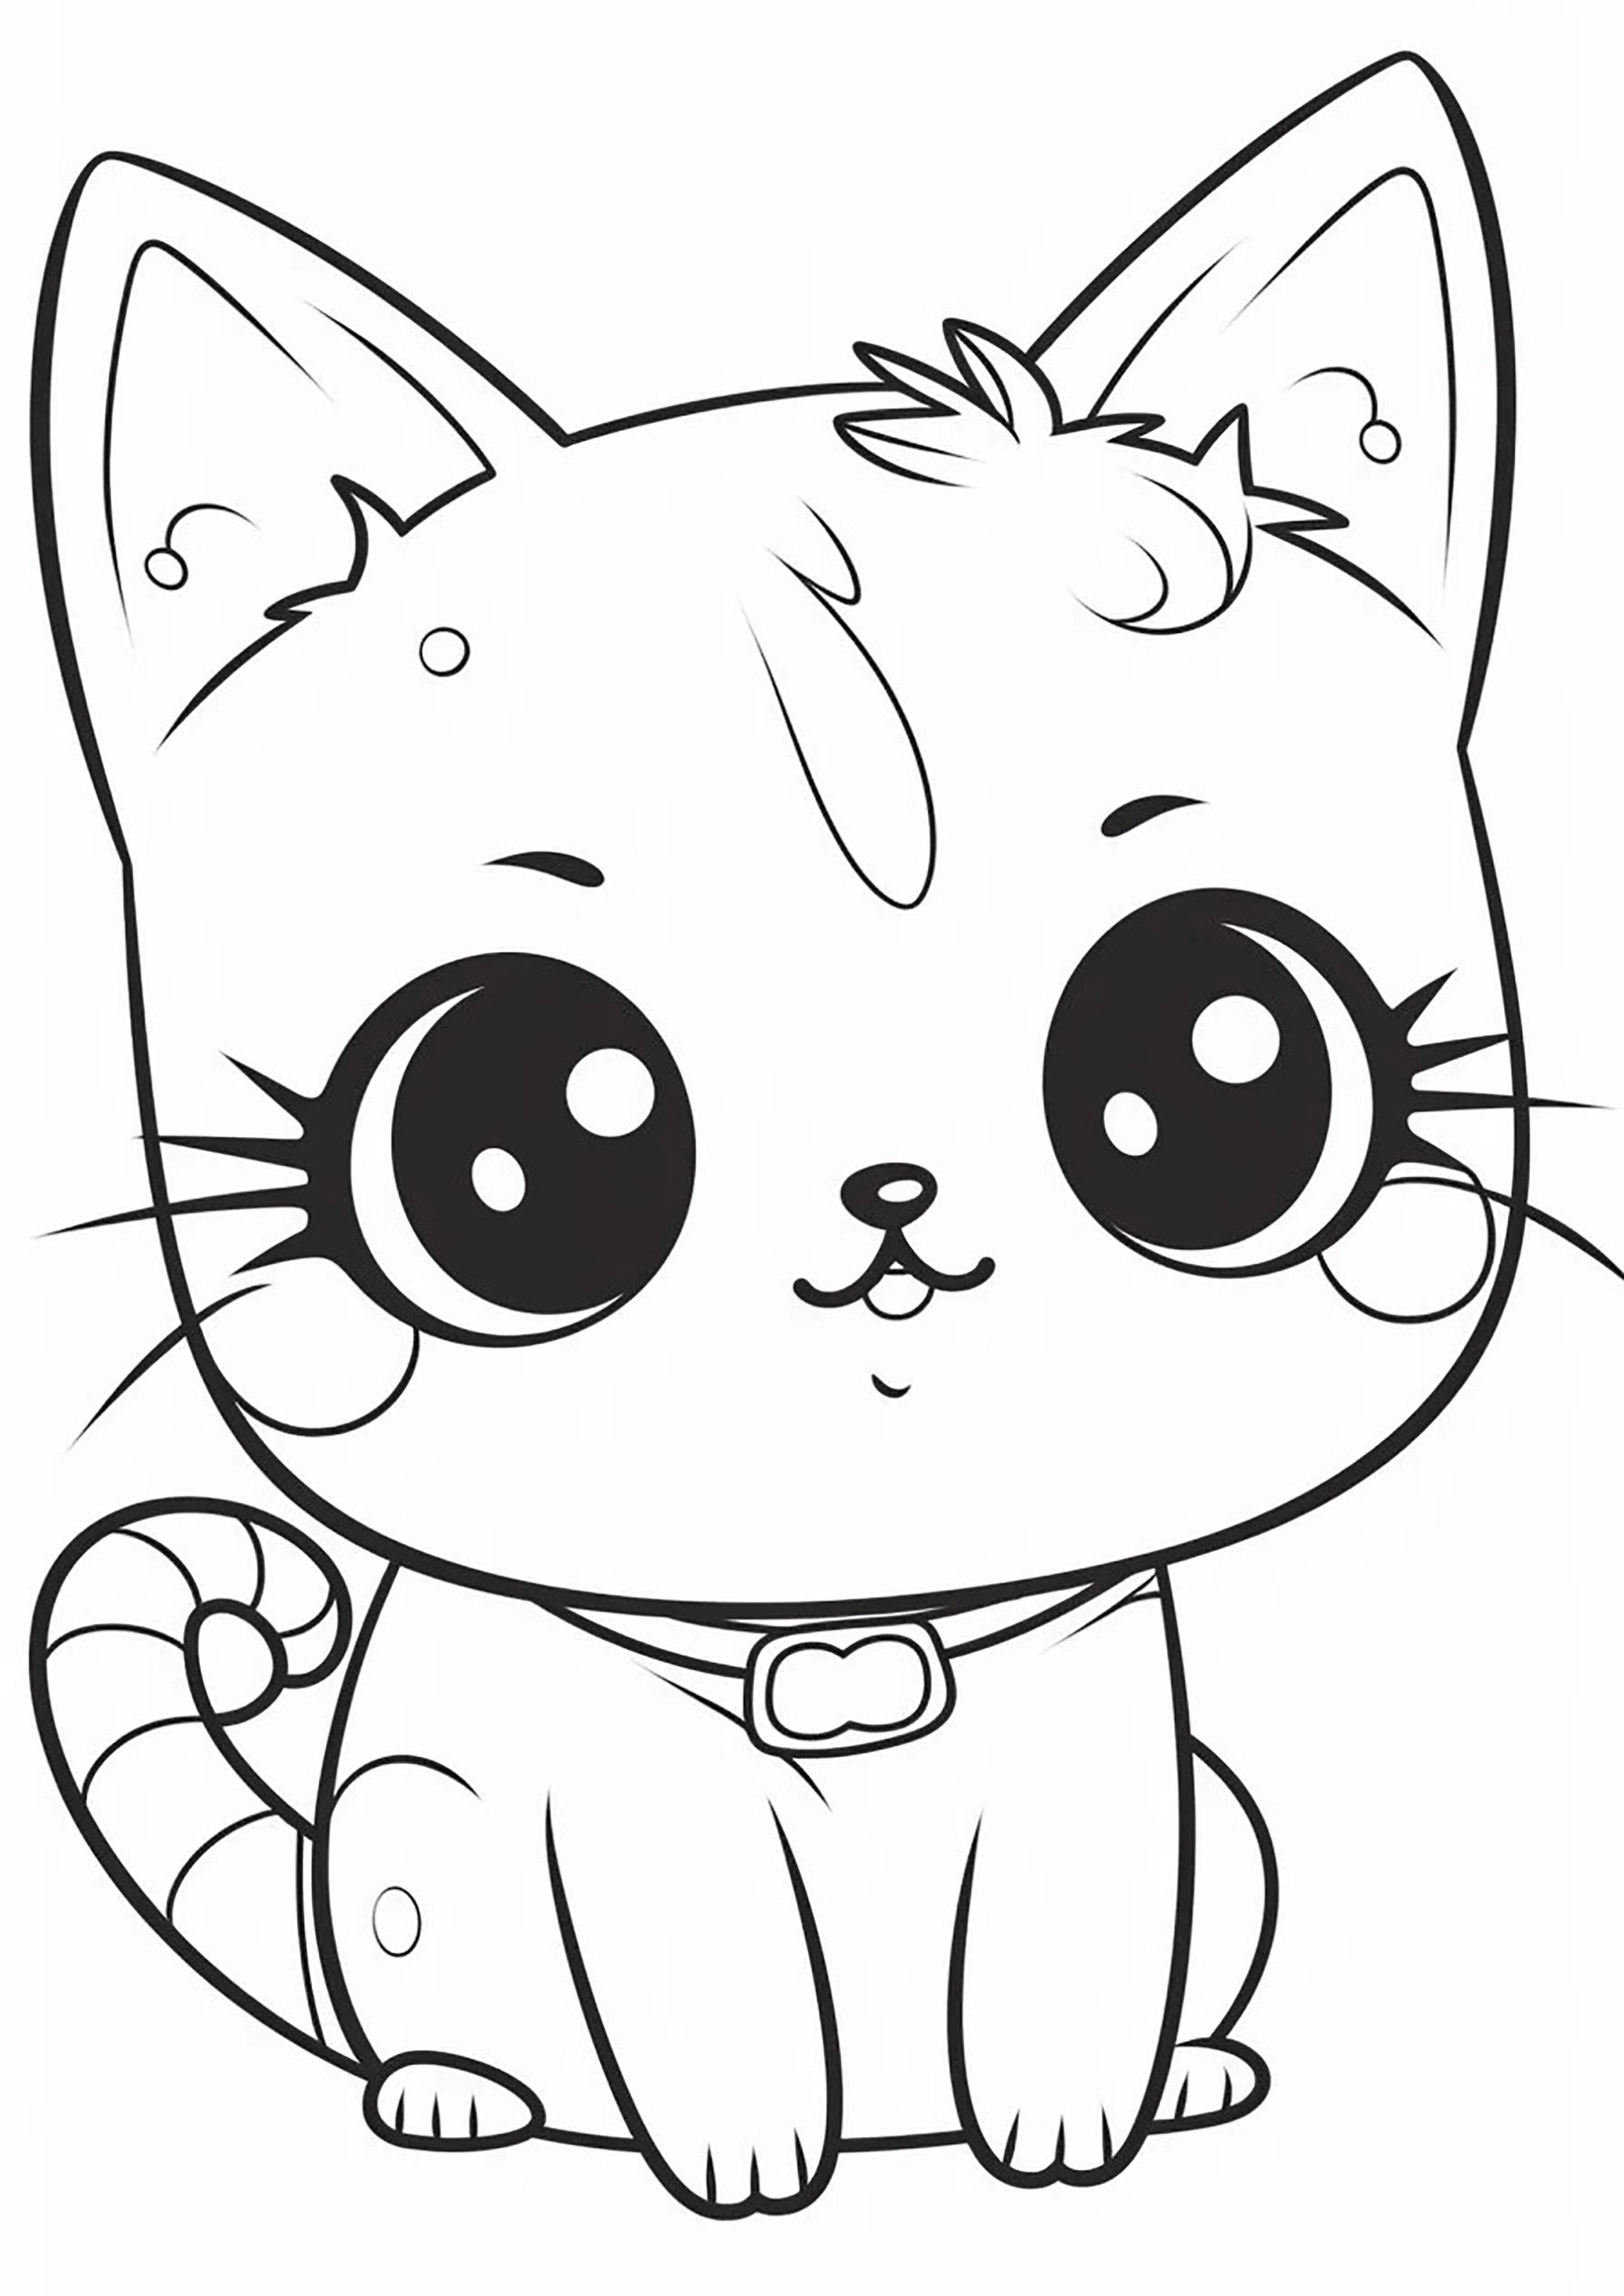 Desenhos para colorir gratuitos de Gatos para baixar - Gatos